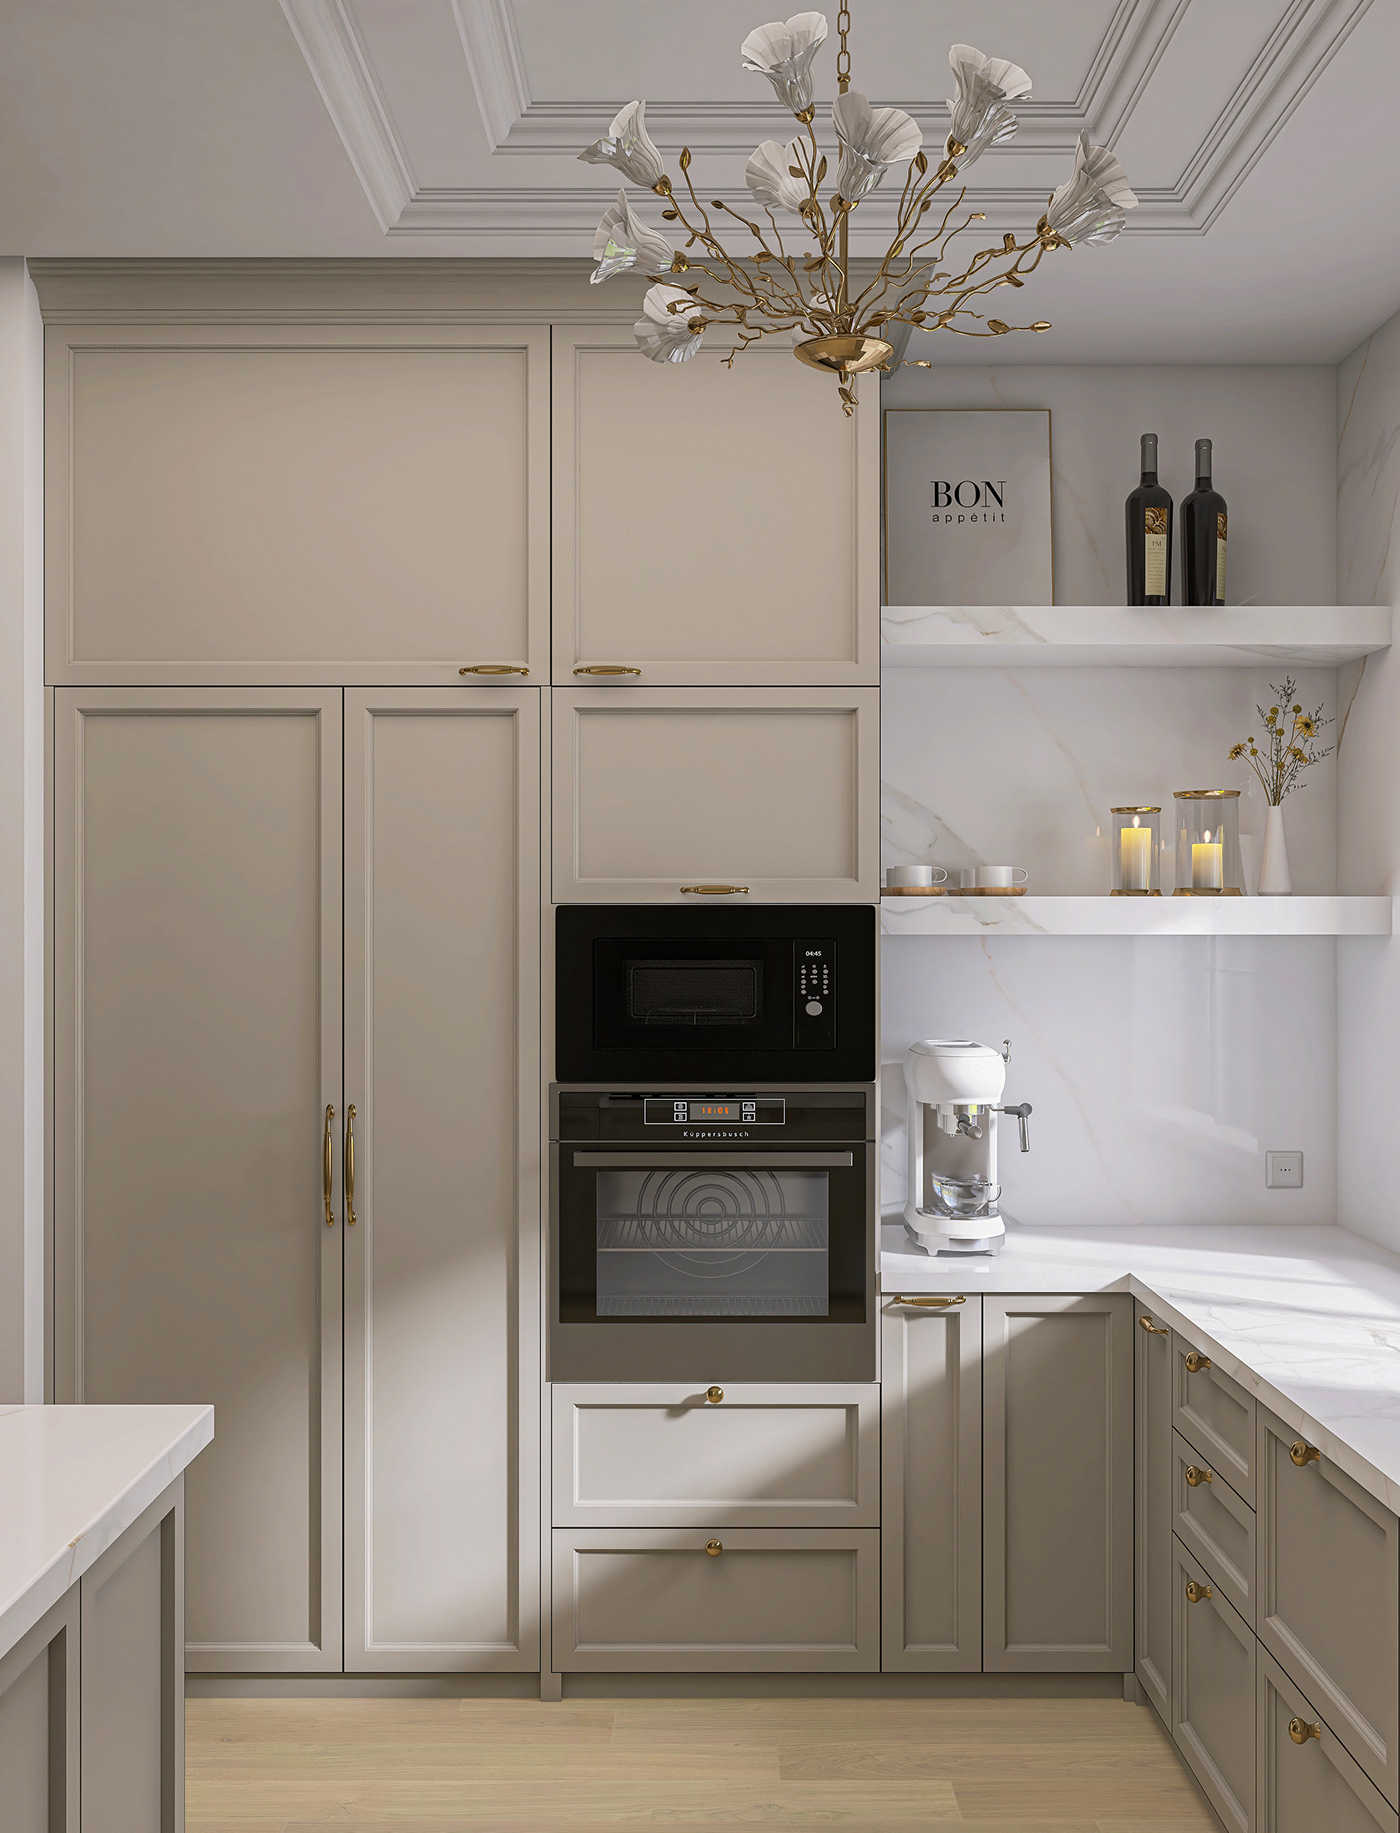 cabinetry kitchen classic design Modern Design soft interior light kitchen design Render visualization interior design 